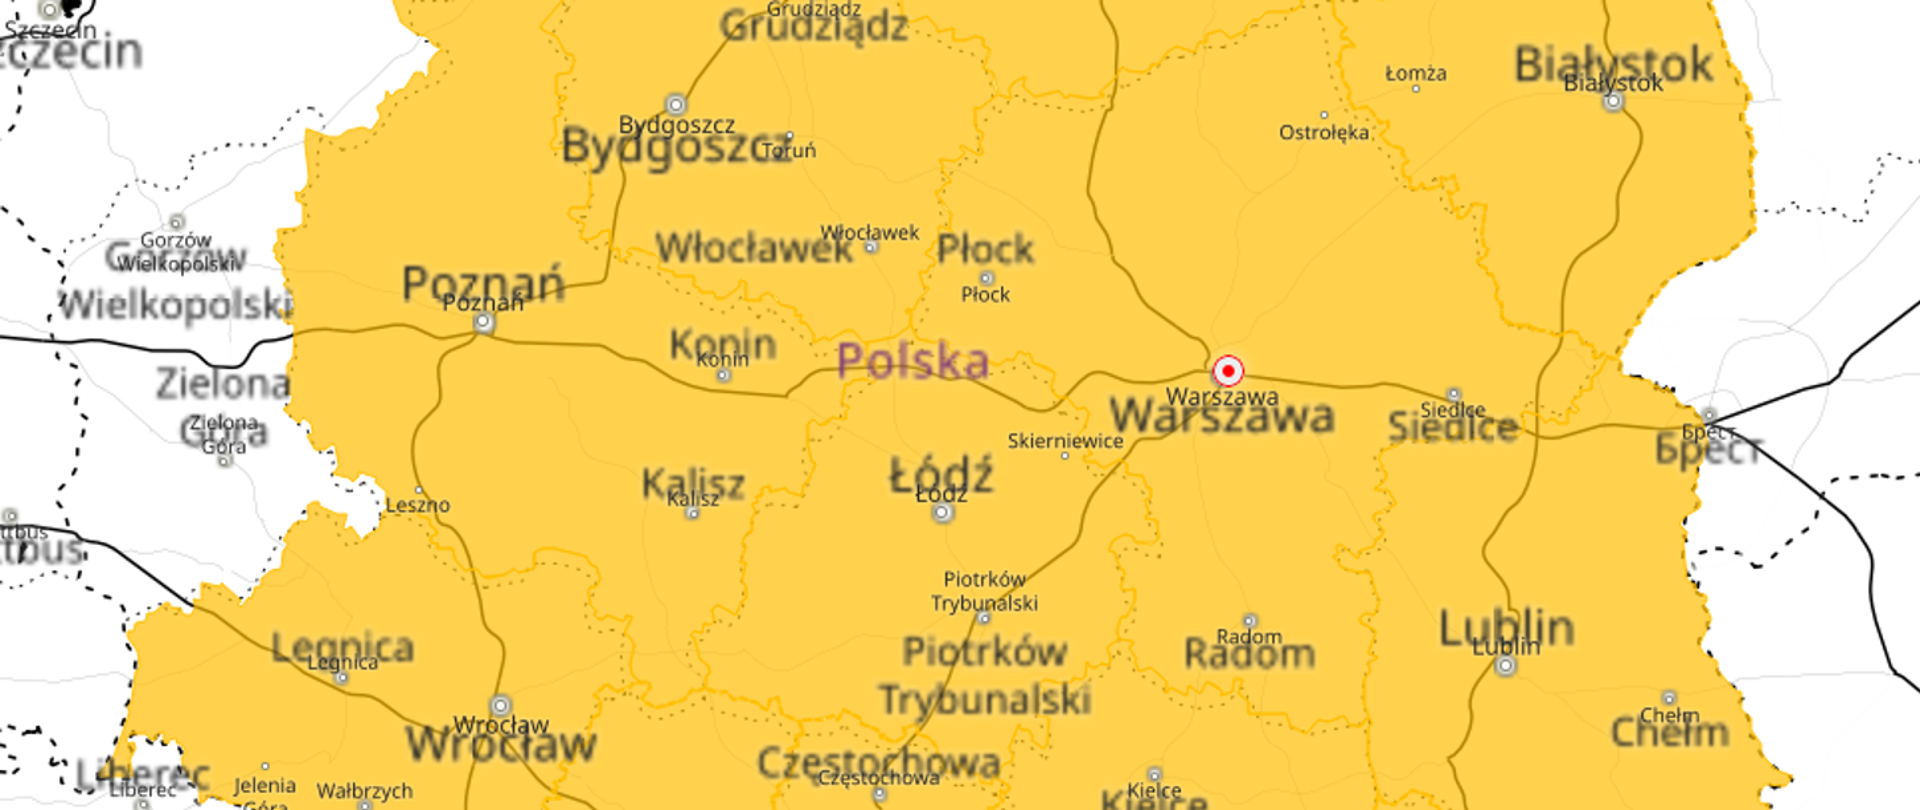 Obraz przedstawiający mapę Polski